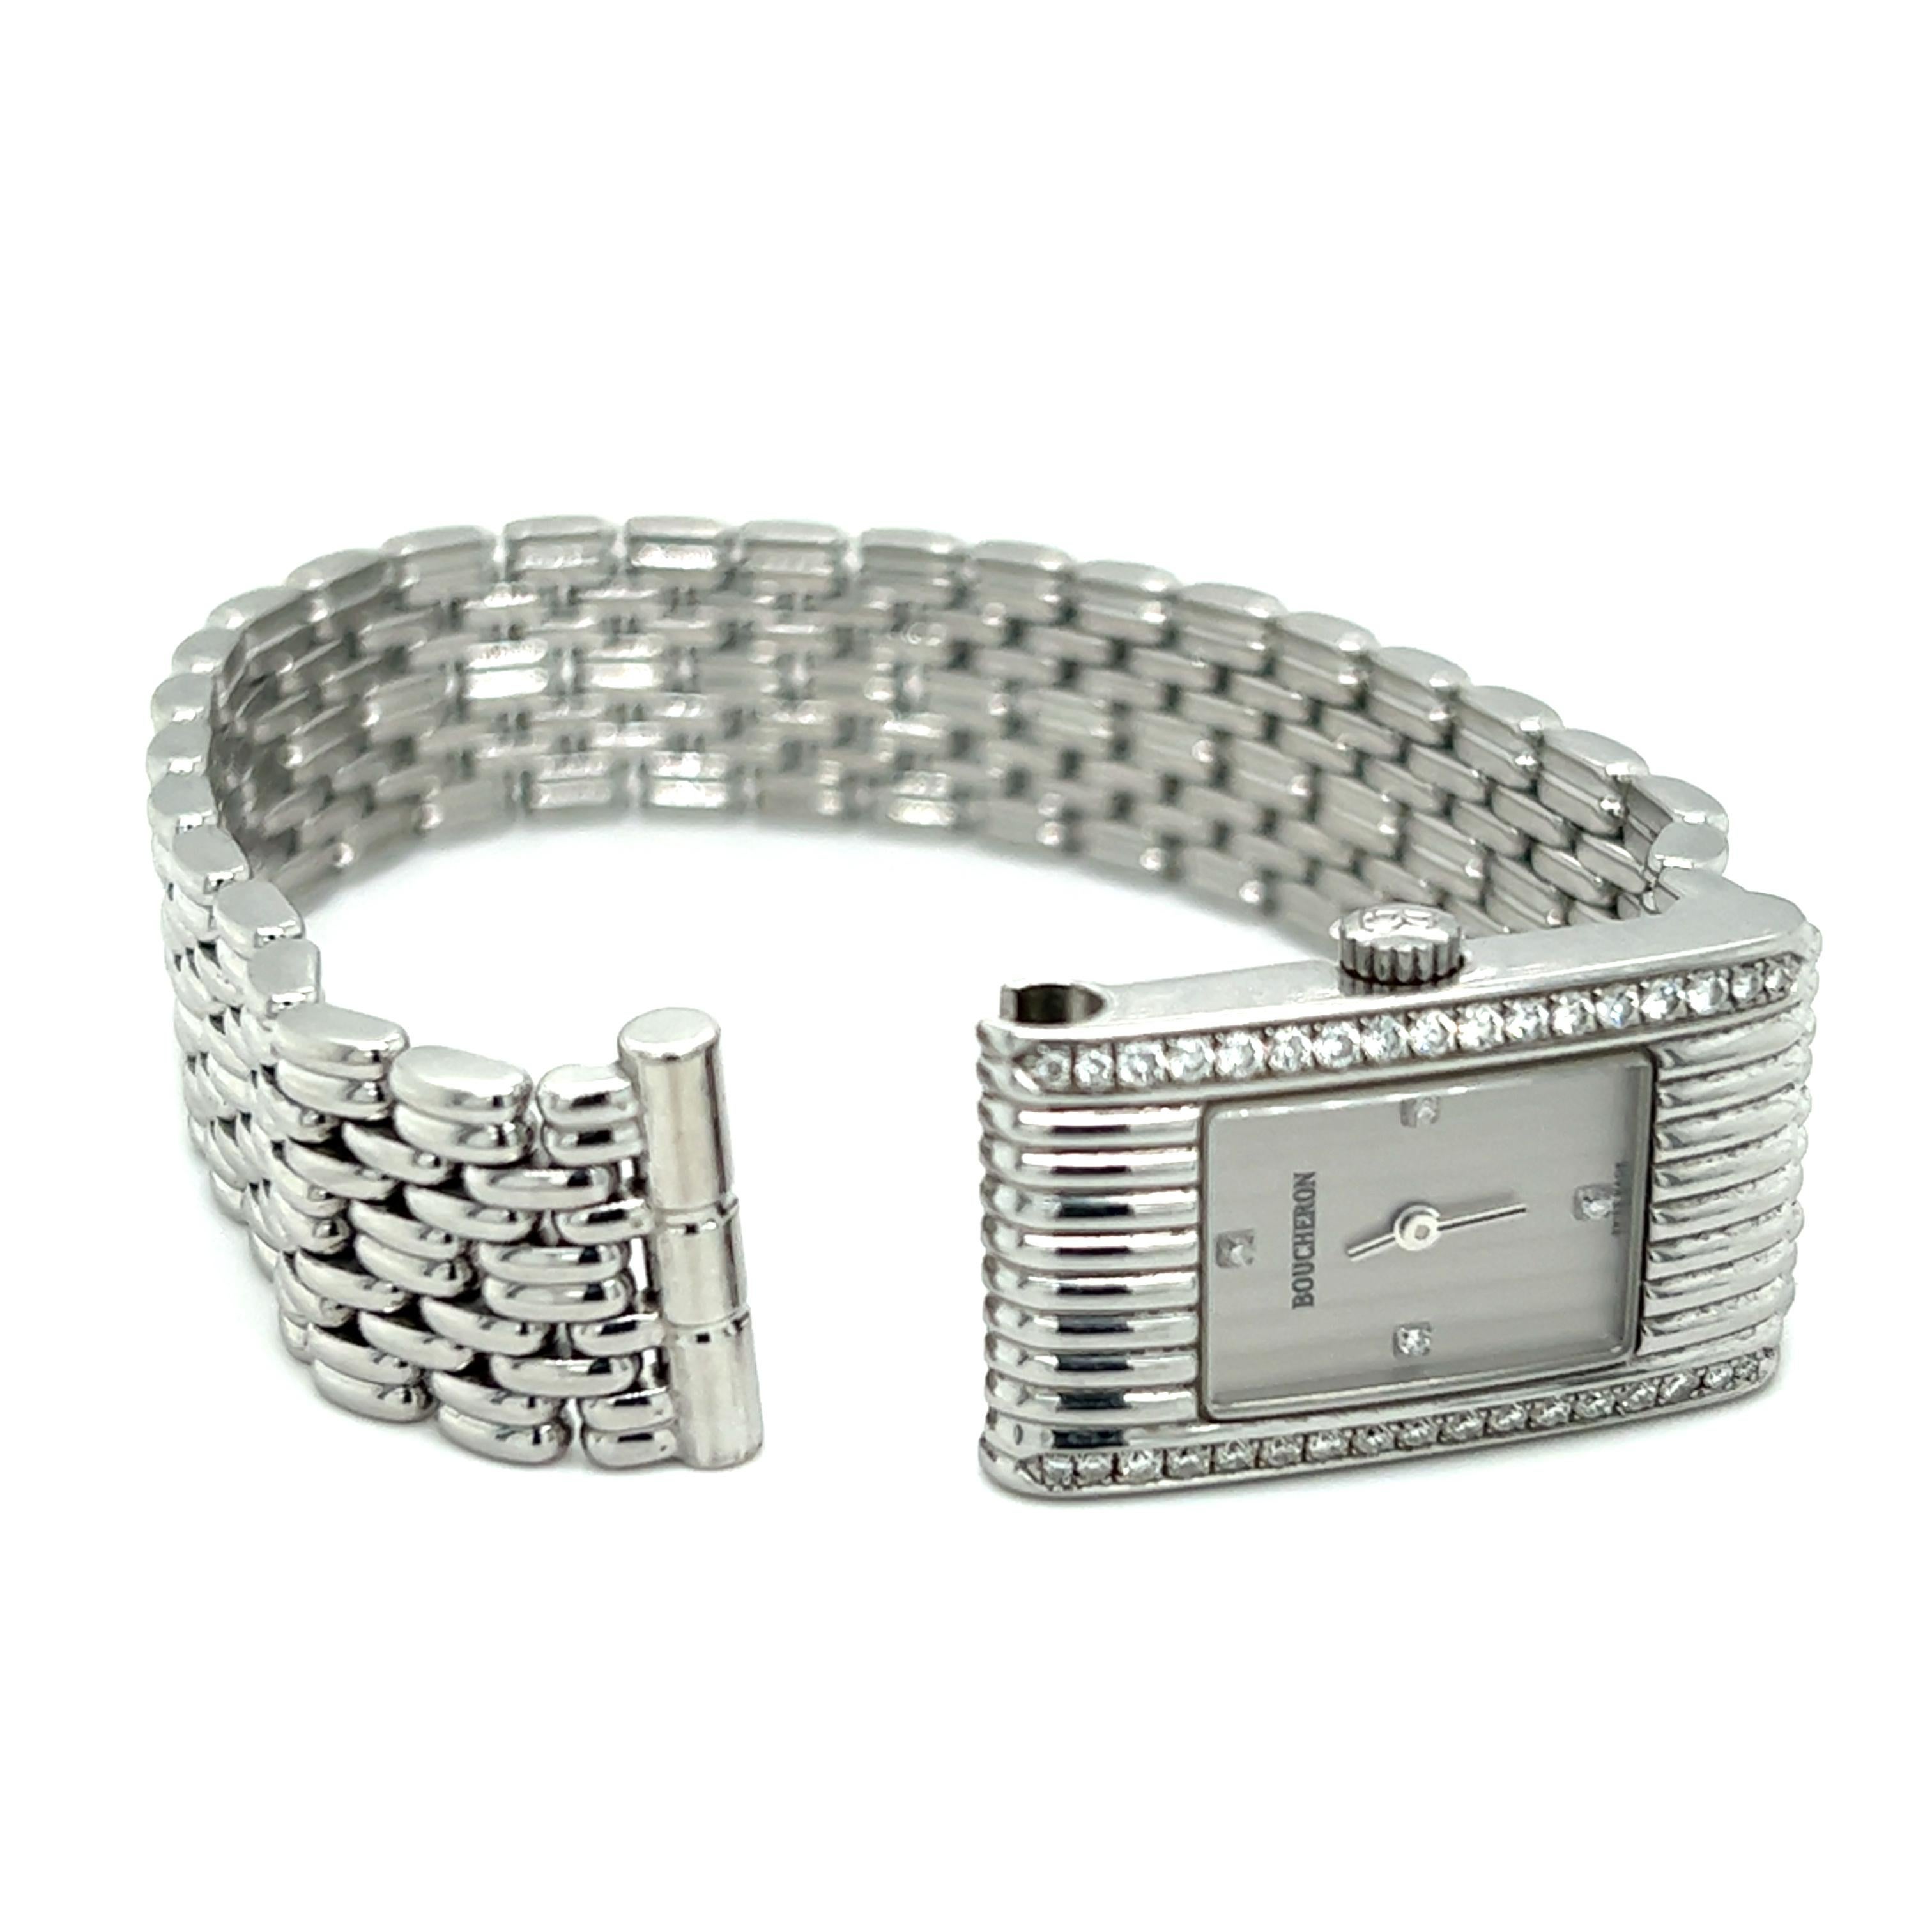  Une montre de femme en acier inoxydable à quartz Boucheron Reflect sertie de trente-huit diamants ronds de taille brillant, d'un poids total d'environ 0,50 carat, de couleur G/H et de pureté SI1. Le bracelet en acier inoxydable mesure 25,00 mm de